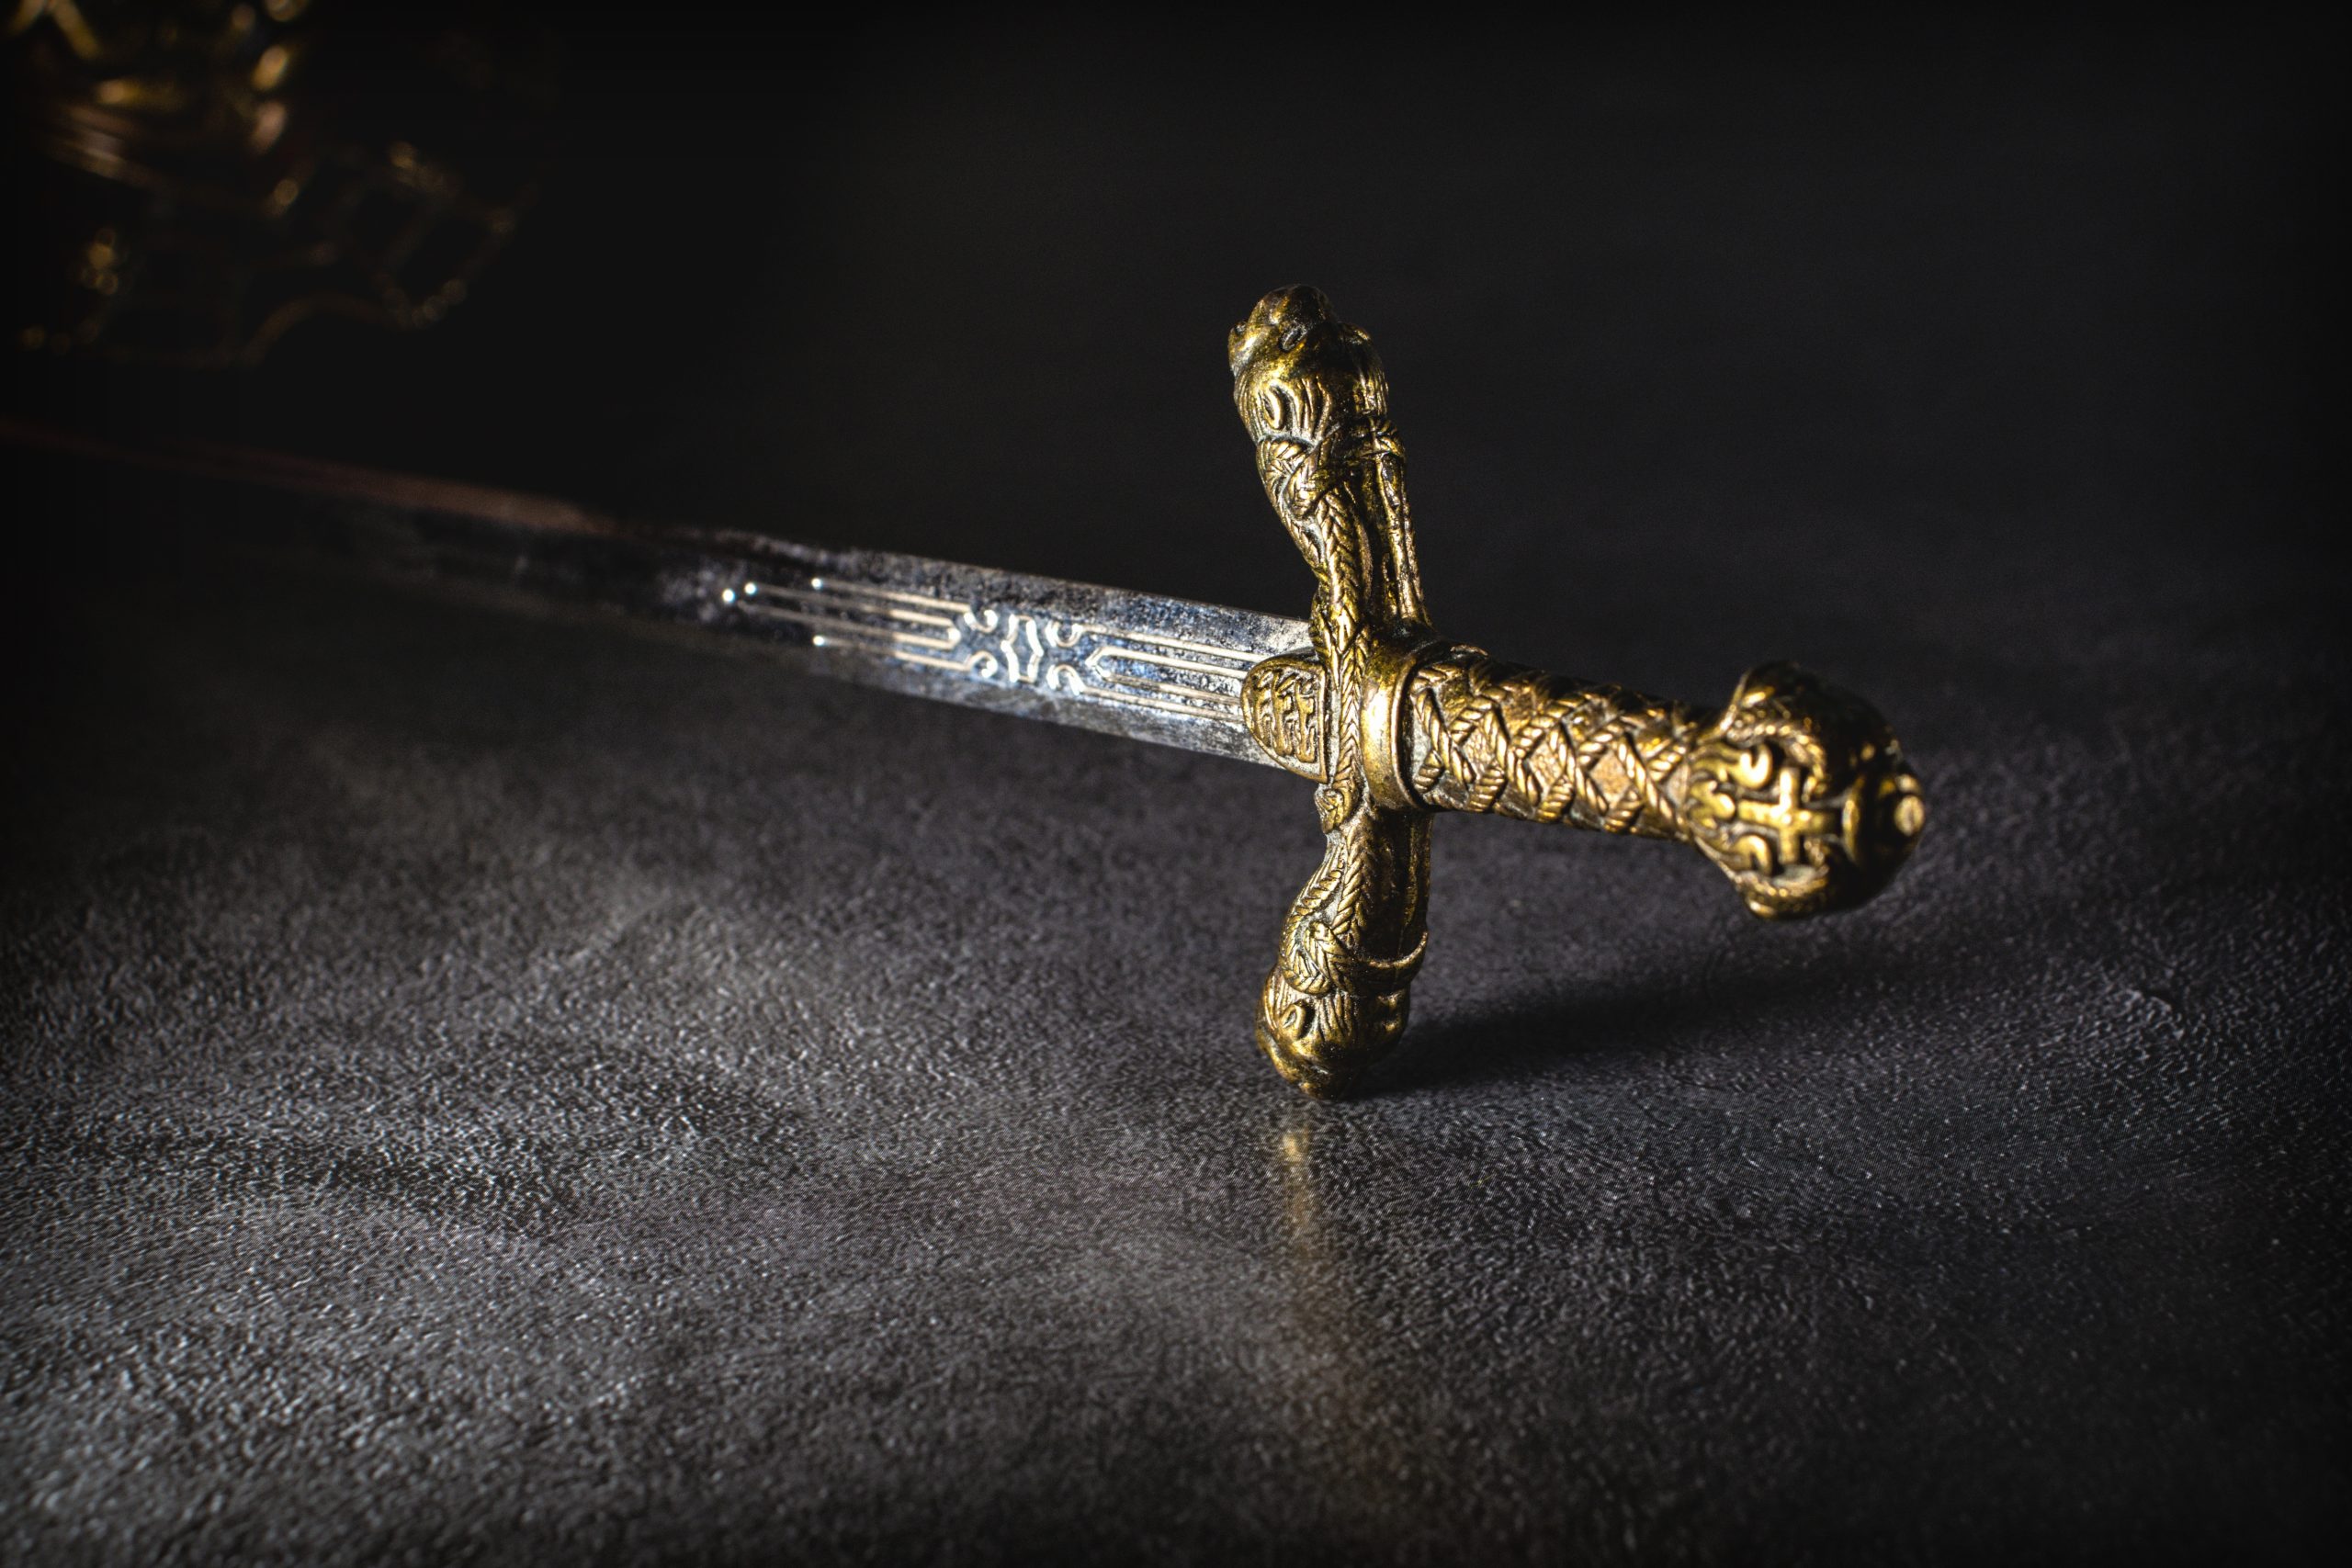 Un sub ha ritrovato una spada nel fondo del mare dopo 900 anni, apparteneva a un crociato